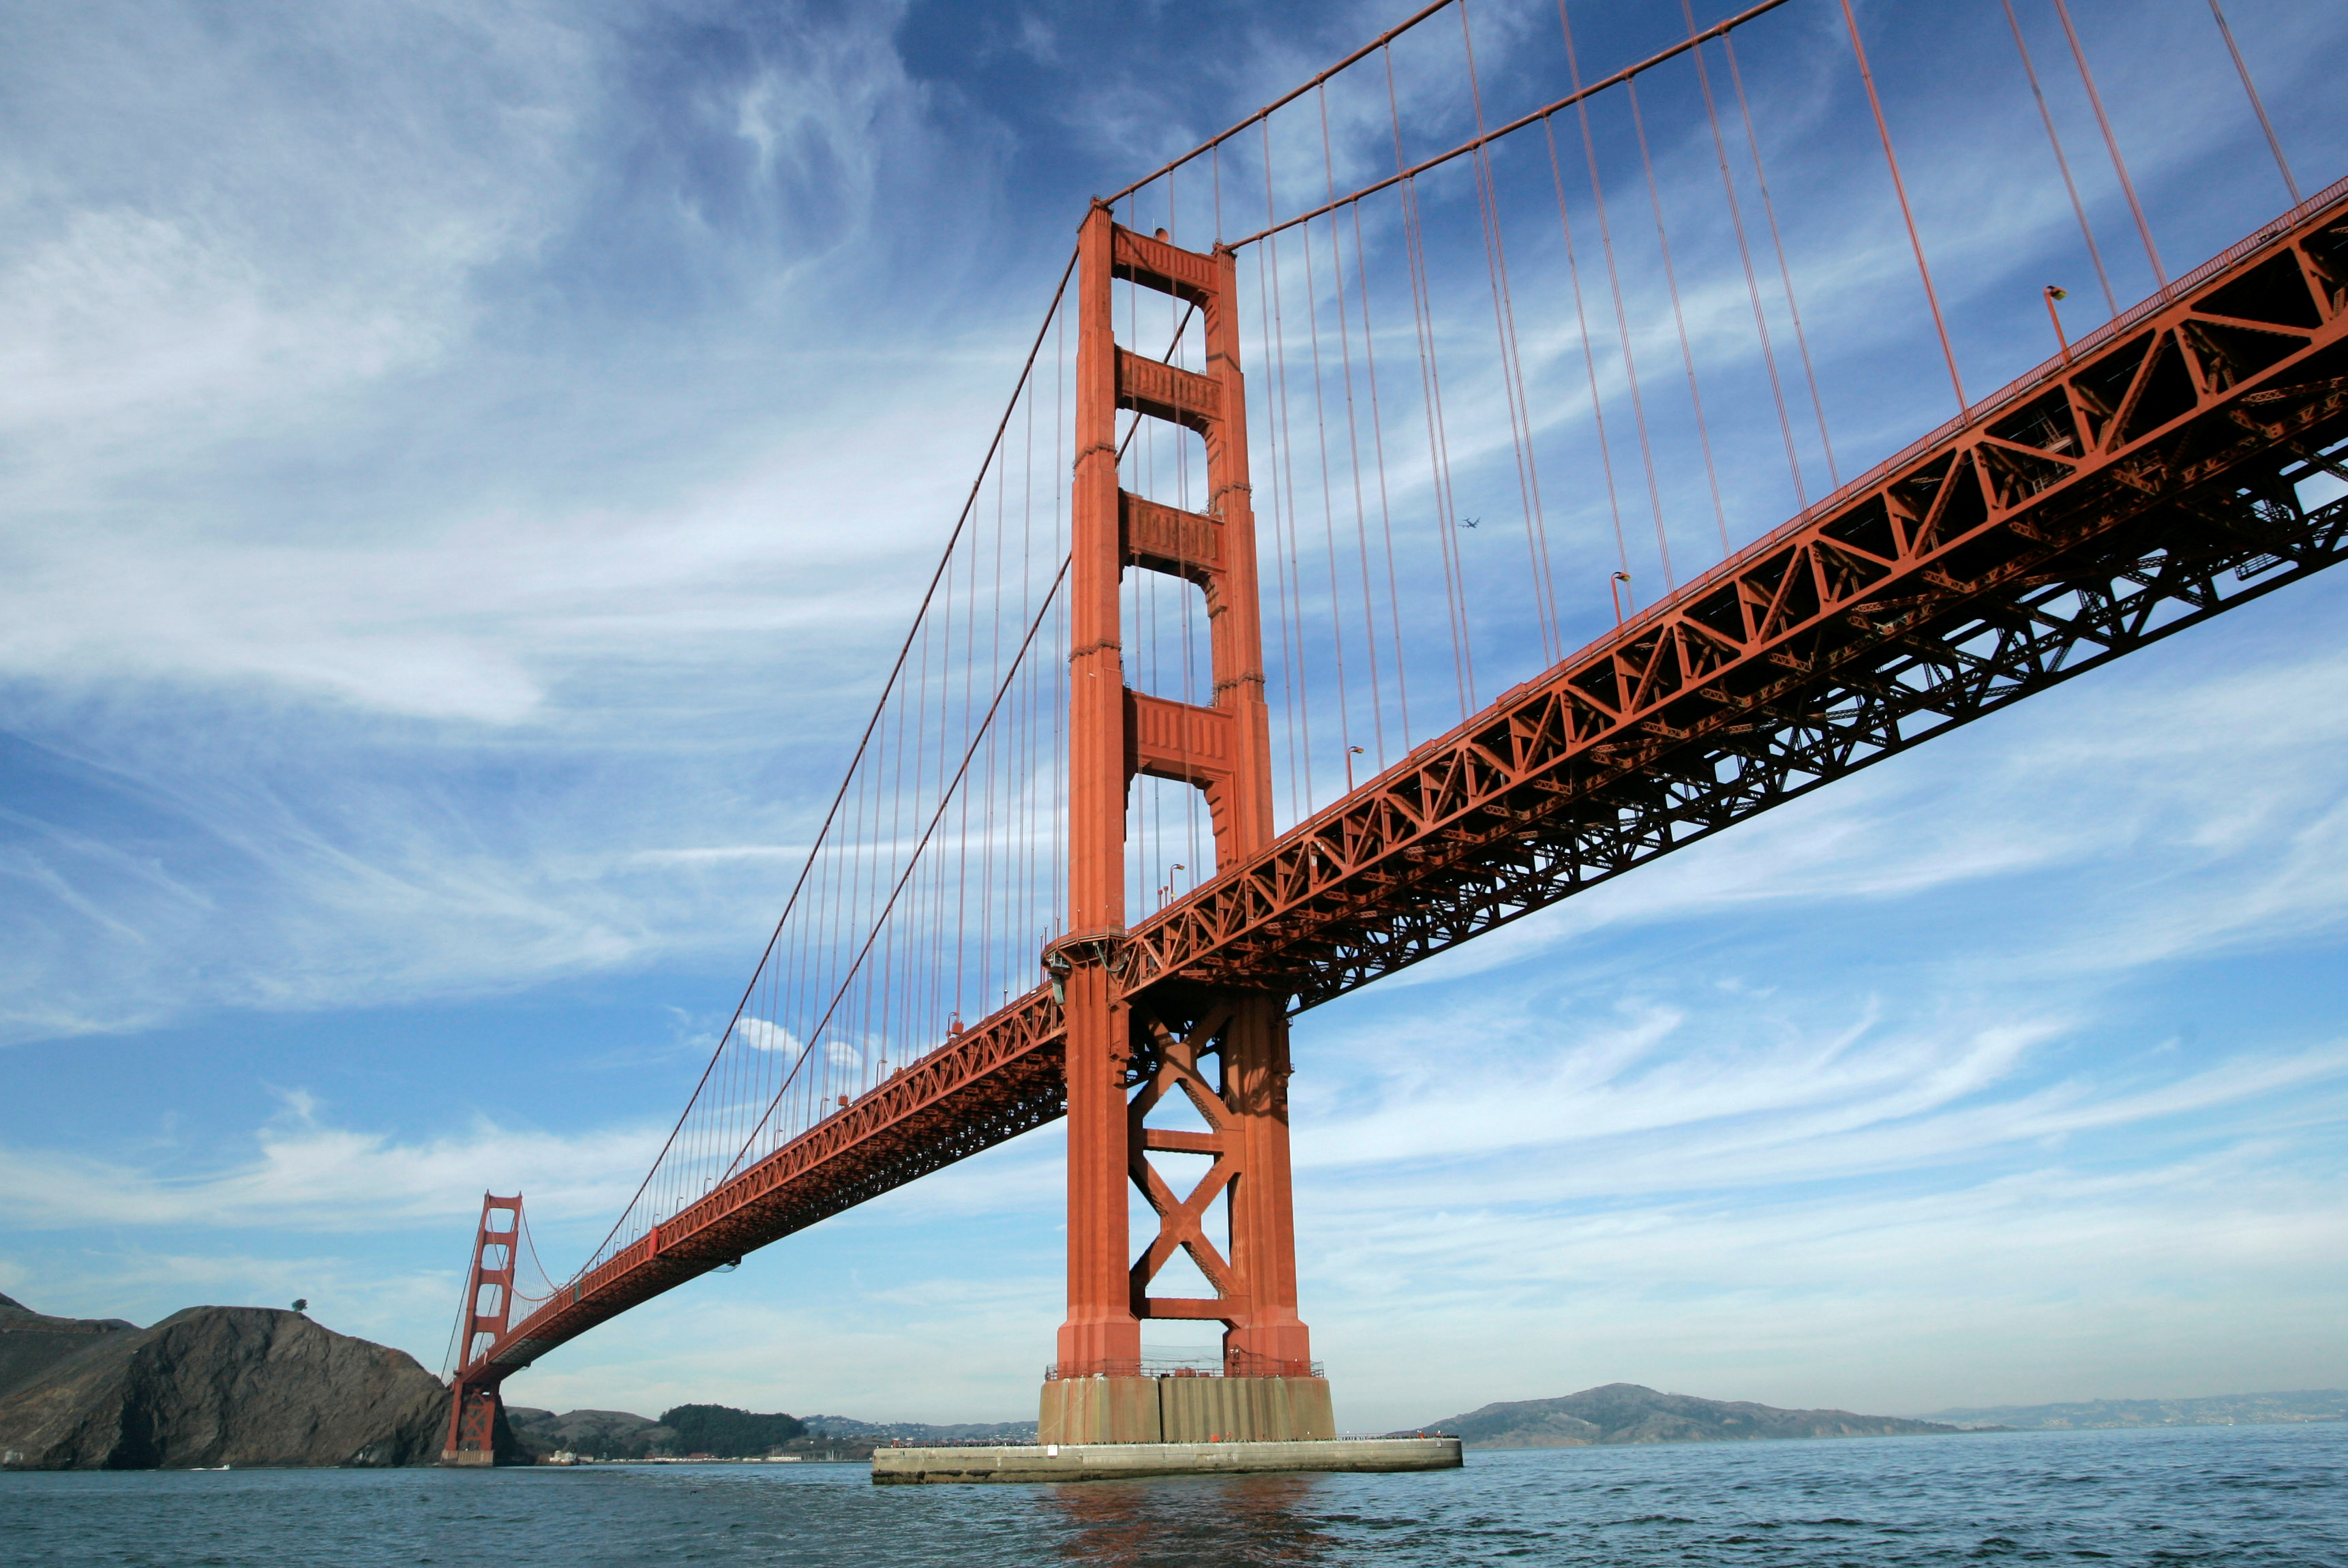 The Golden Gate Bridge on Nov. 15, 2006 in San Francisco.